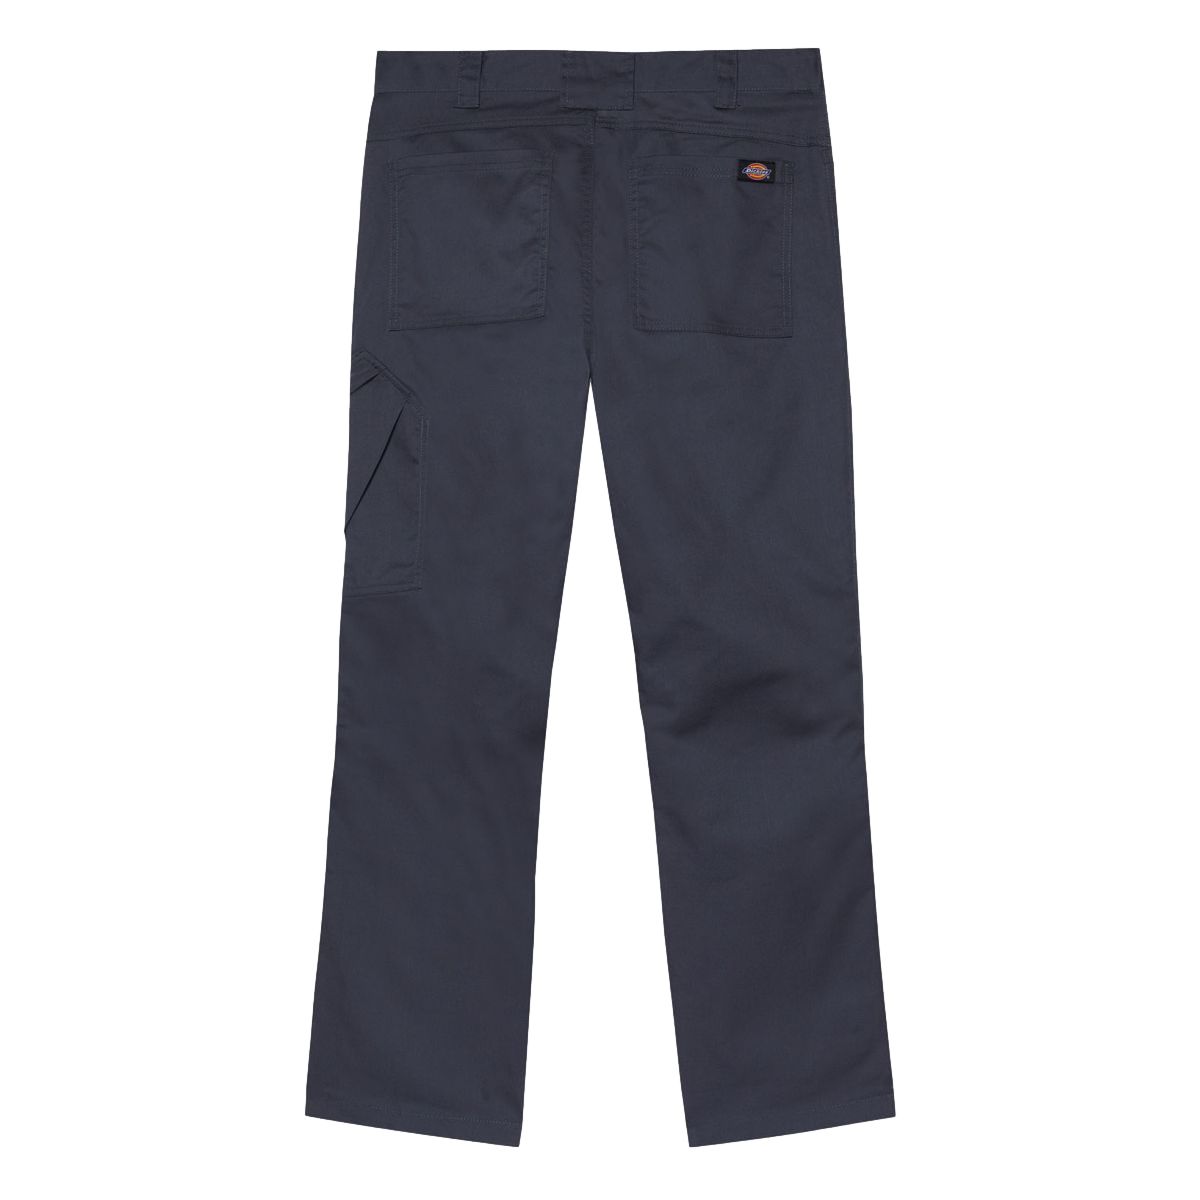 Pantalon de travail Action Flex gris - Dickies - Taille 46 2